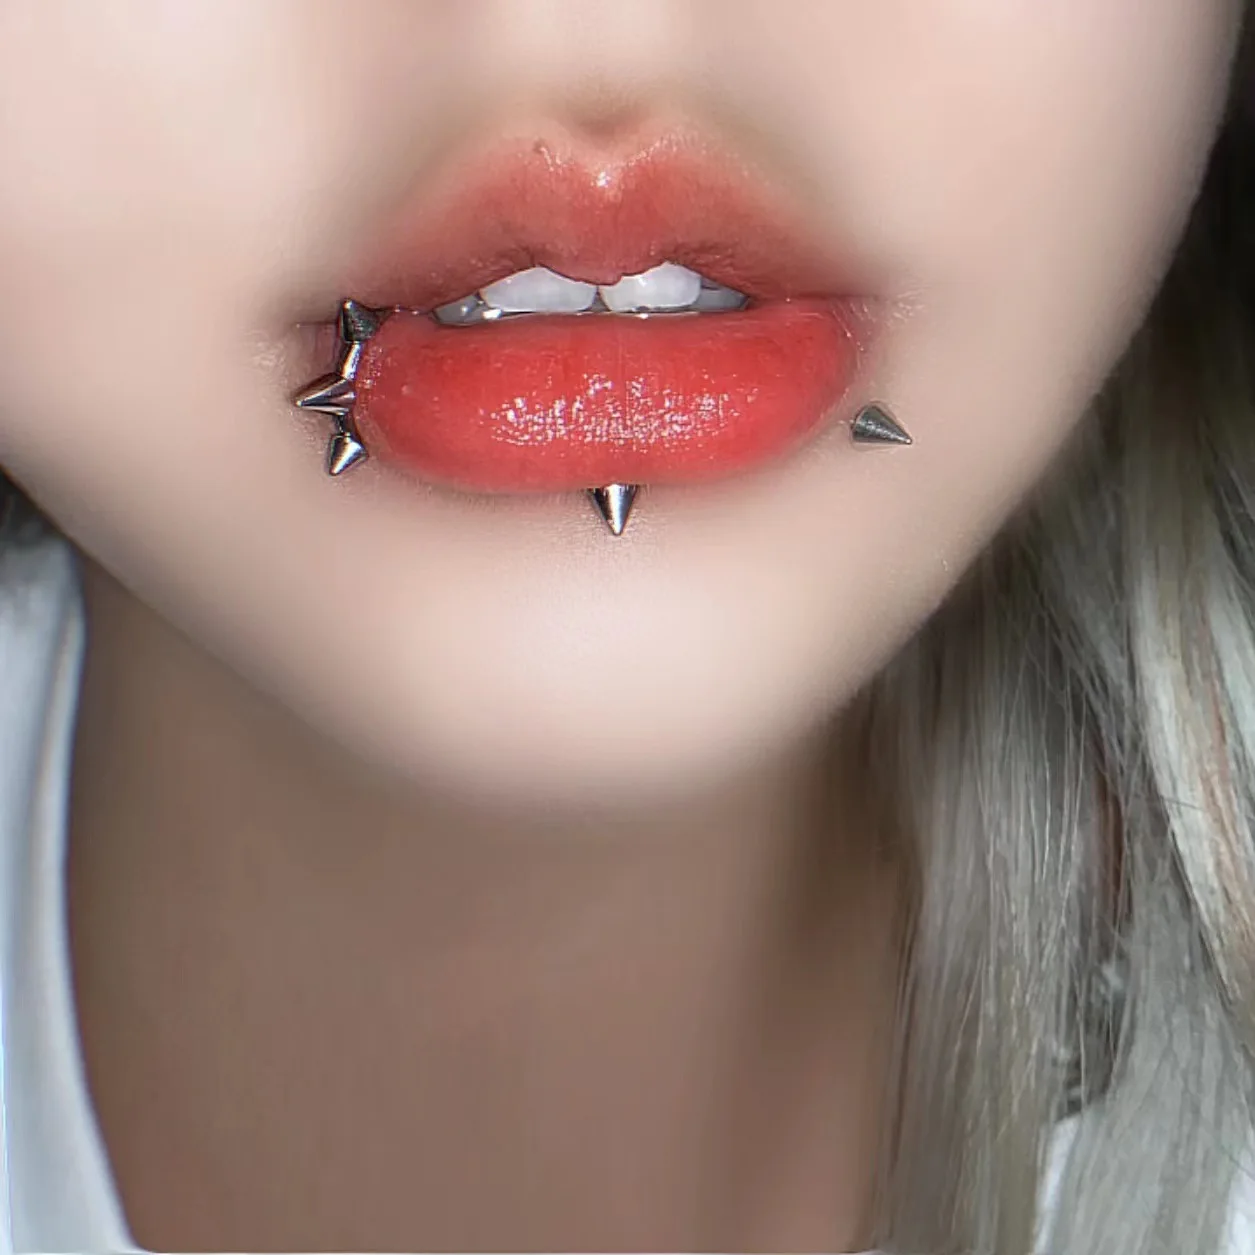 Bites Lip Piercings